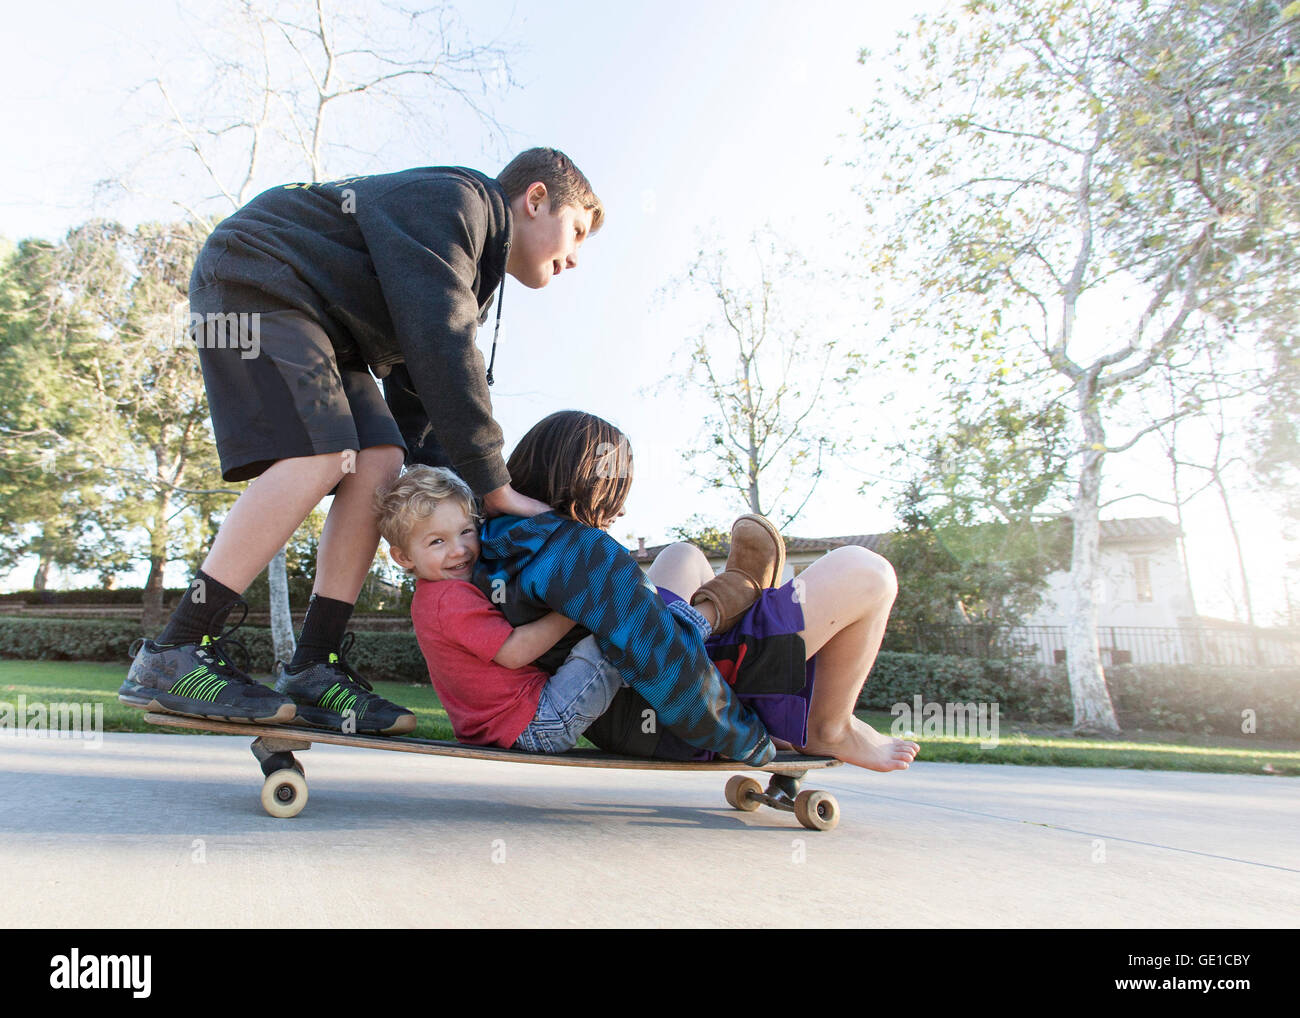 Three boys skateboarding Stock Photo